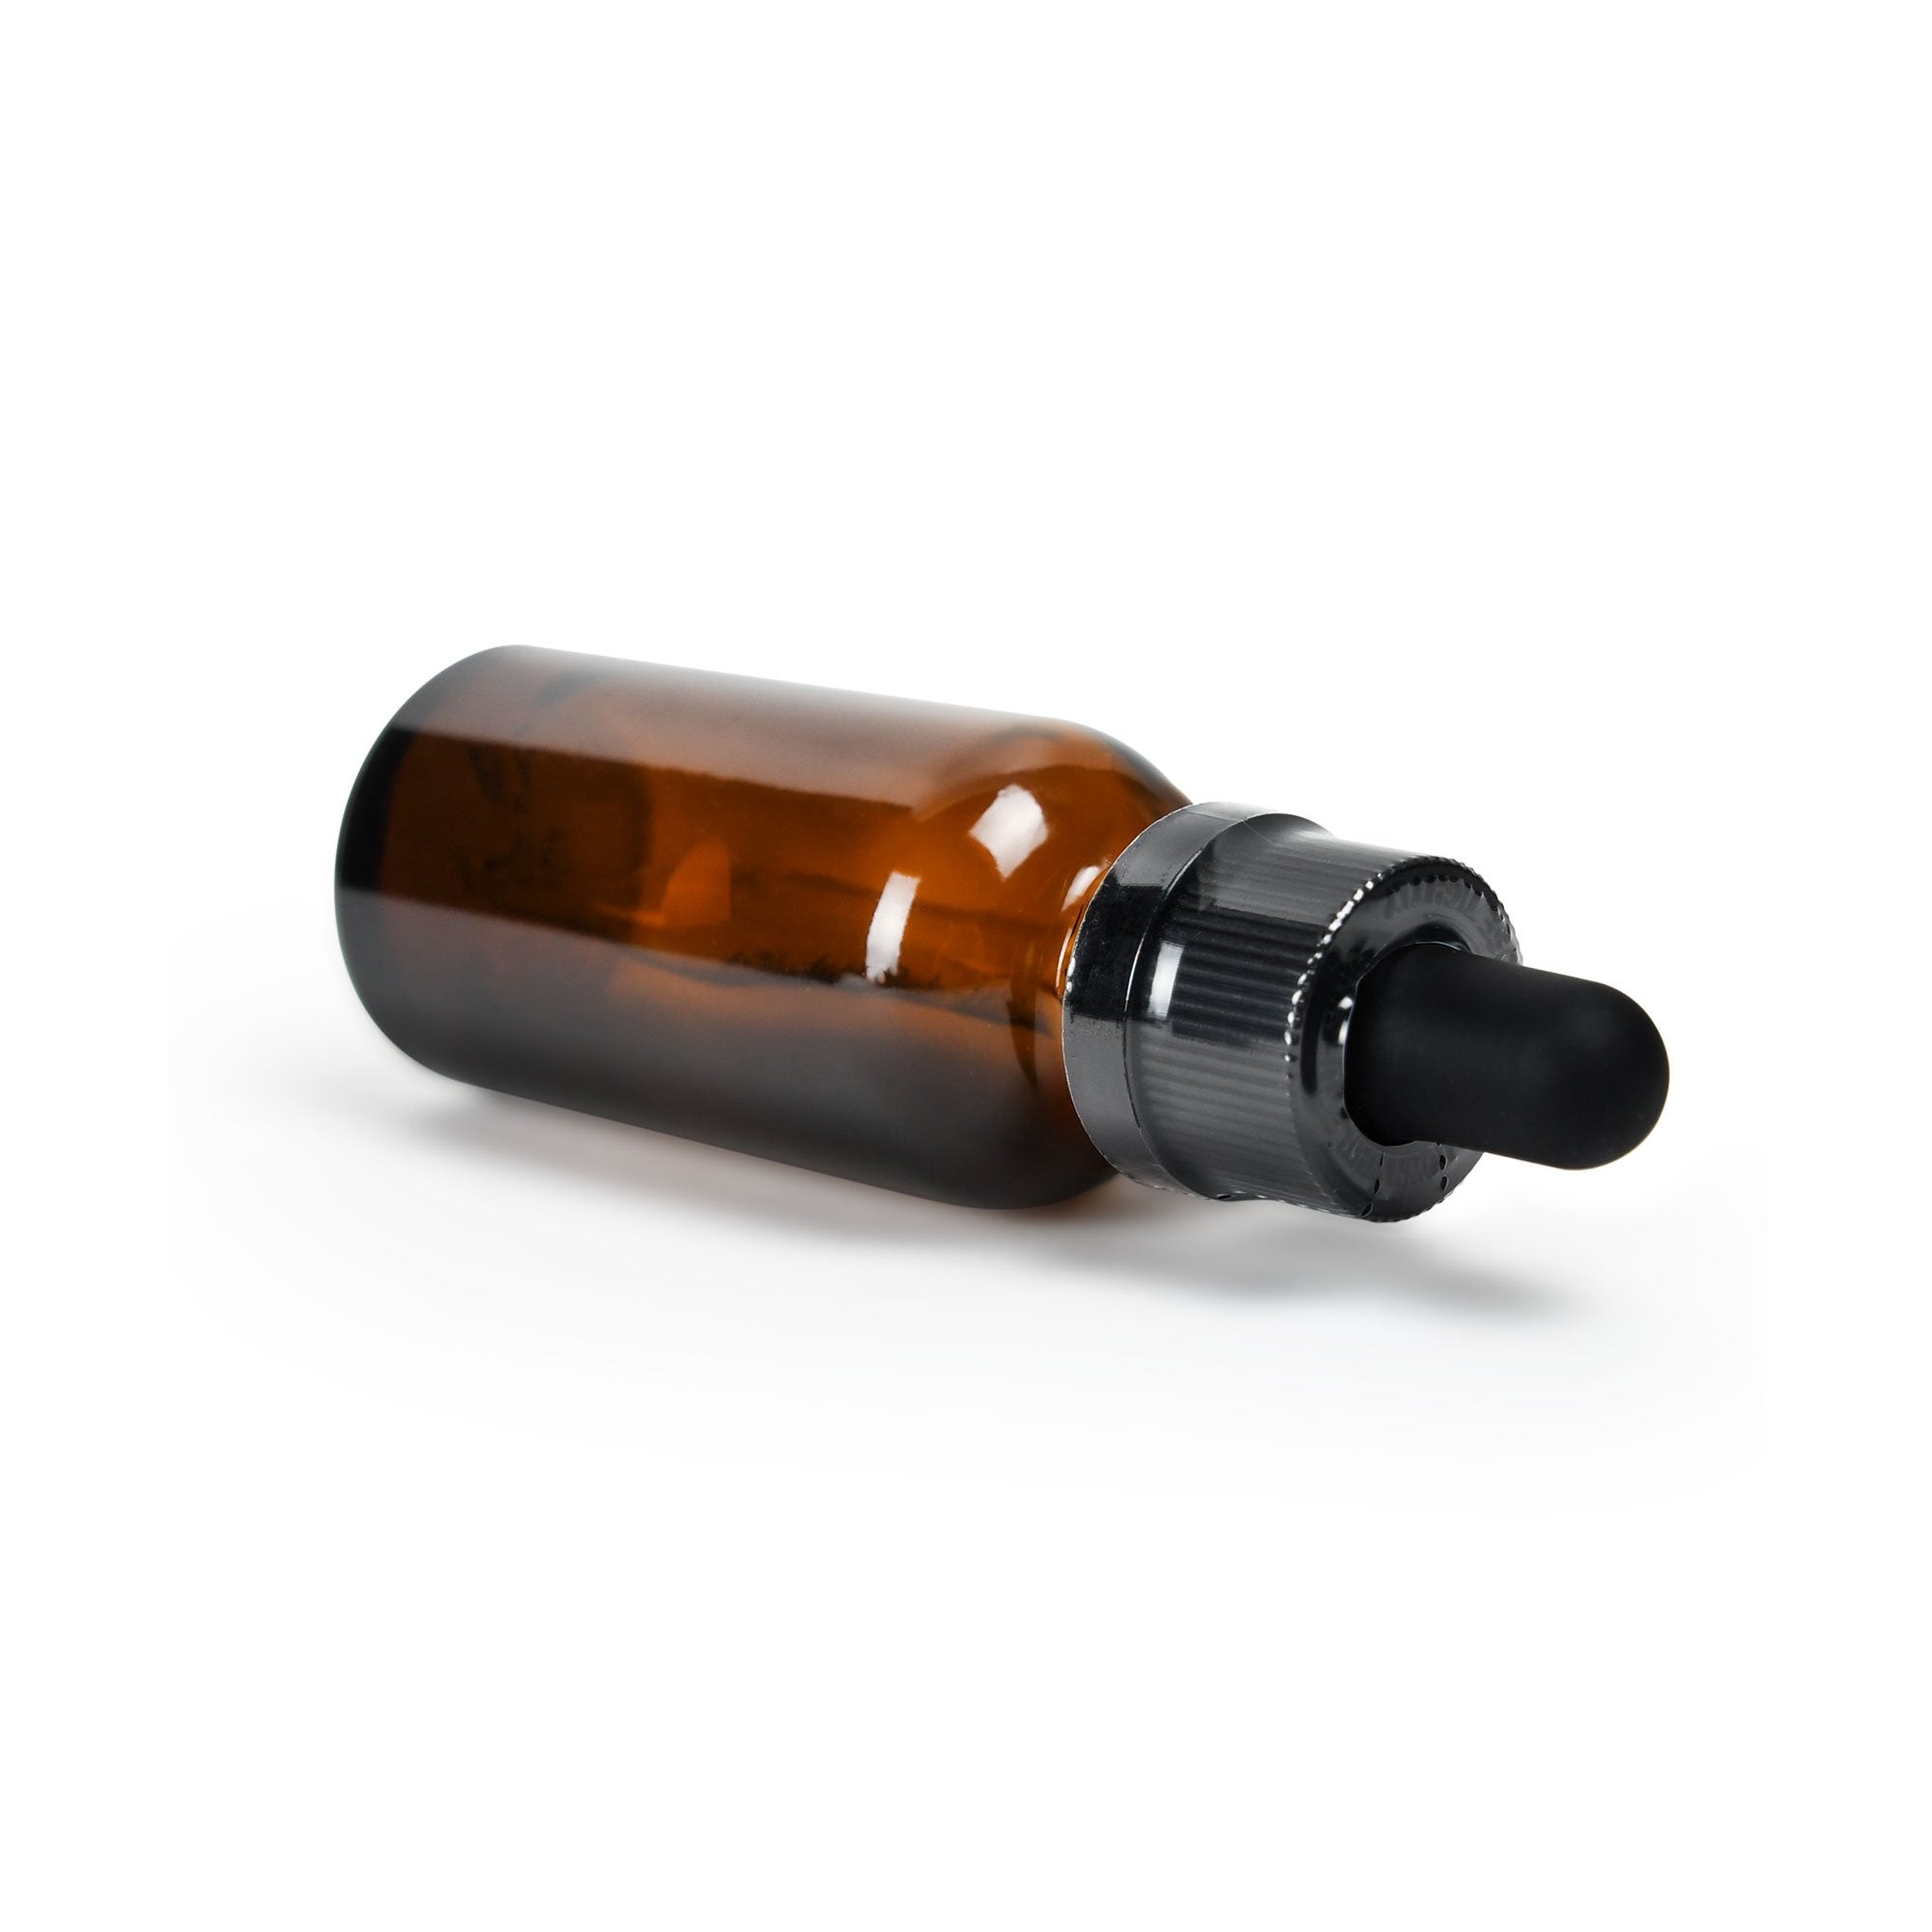 15ml / 30ml Tincture Bottles Tamper Evident Shrink Bands - 250 Count